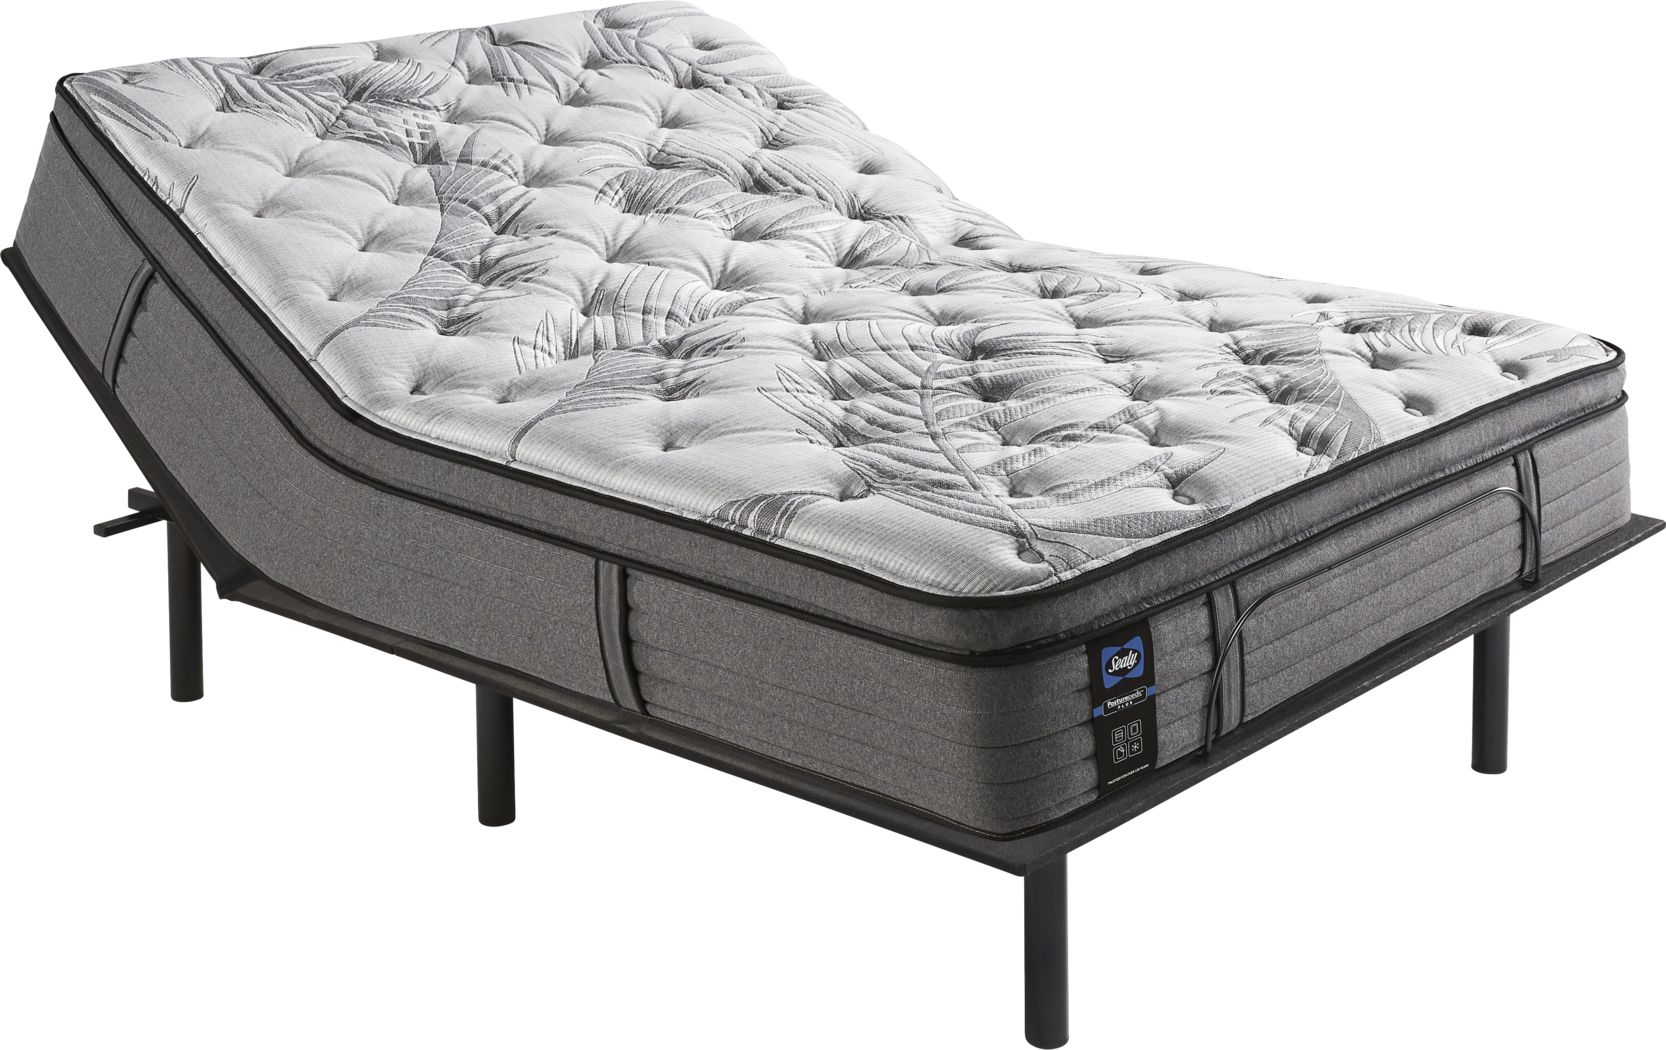 seally ultra plush piillowtop mattress